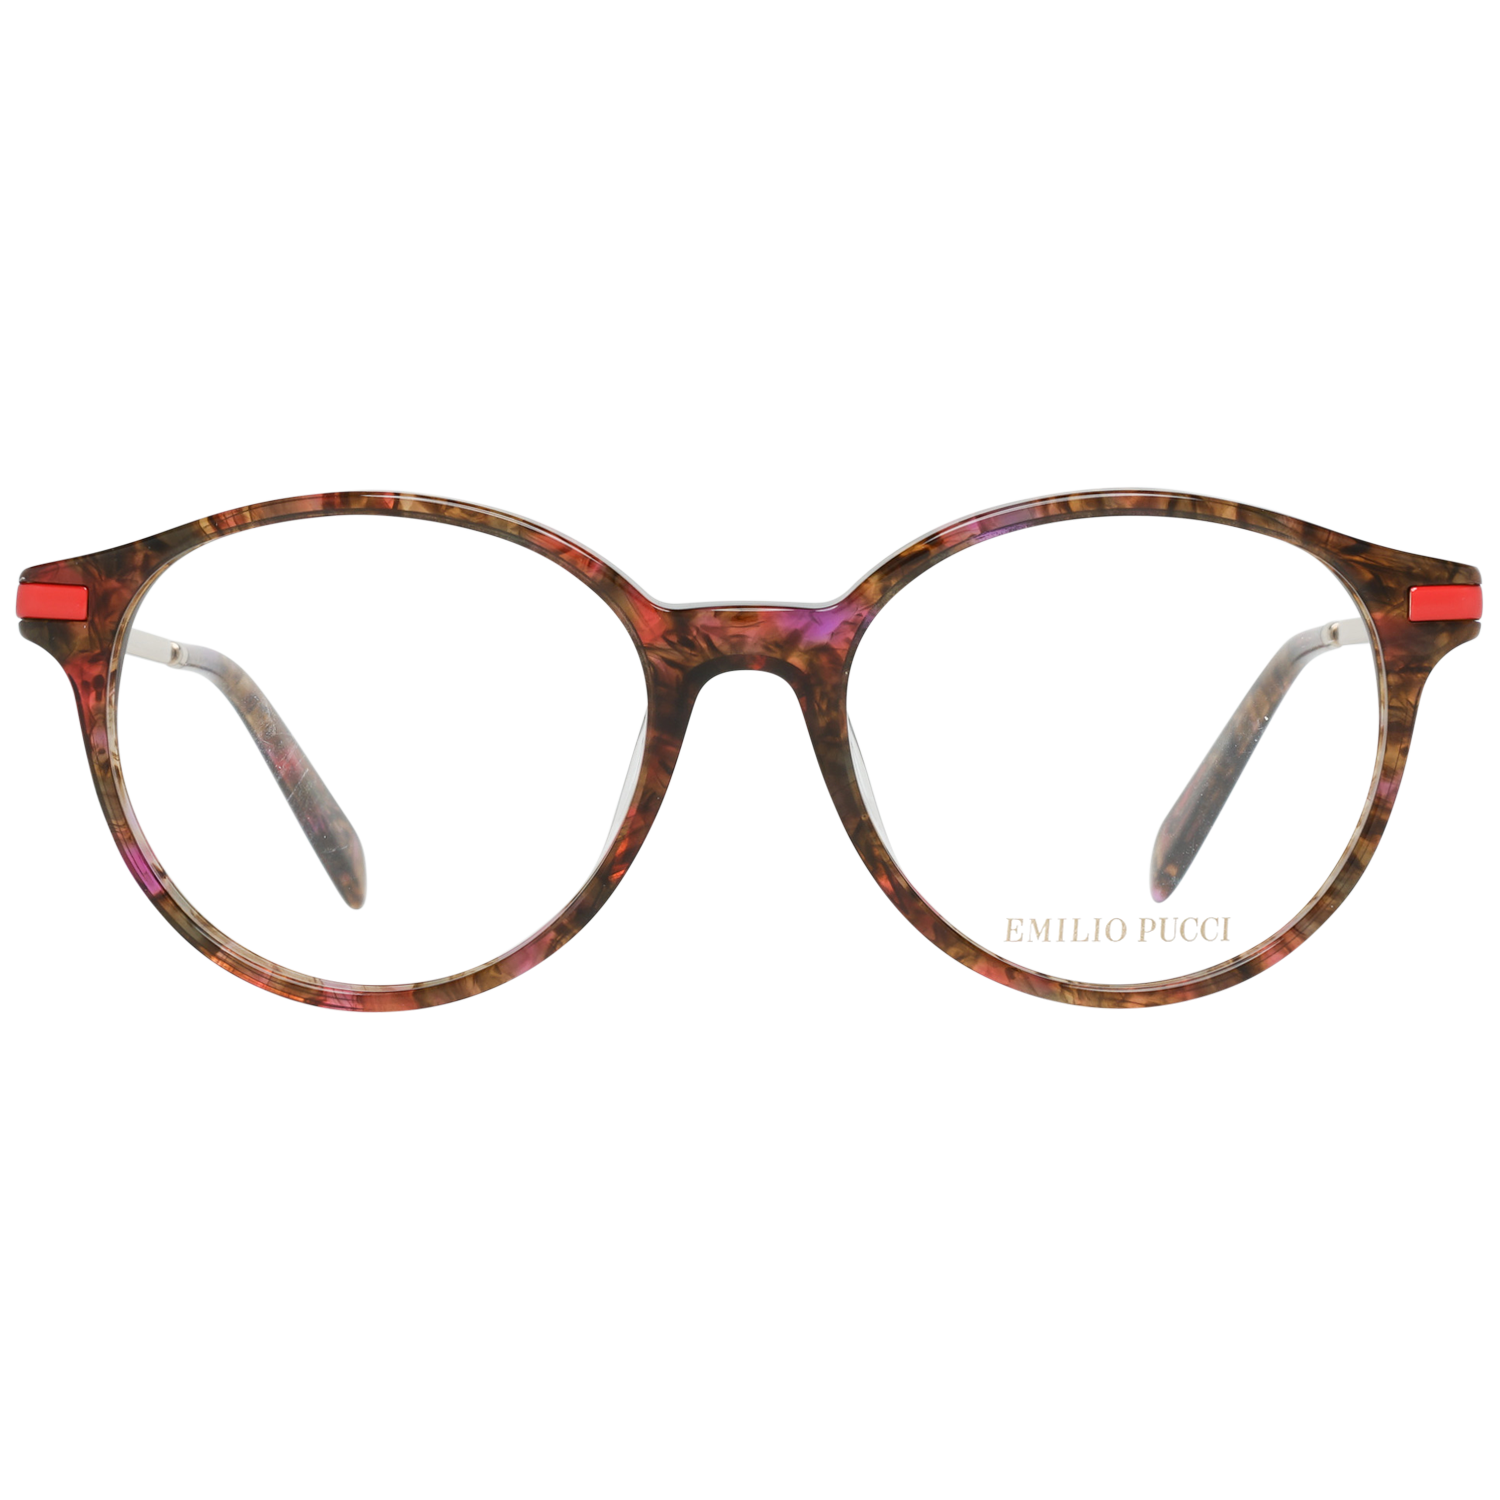 Emilio Pucci Frames Emilio Pucci Optical Frame EP5105 054 52 Eyeglasses Eyewear UK USA Australia 